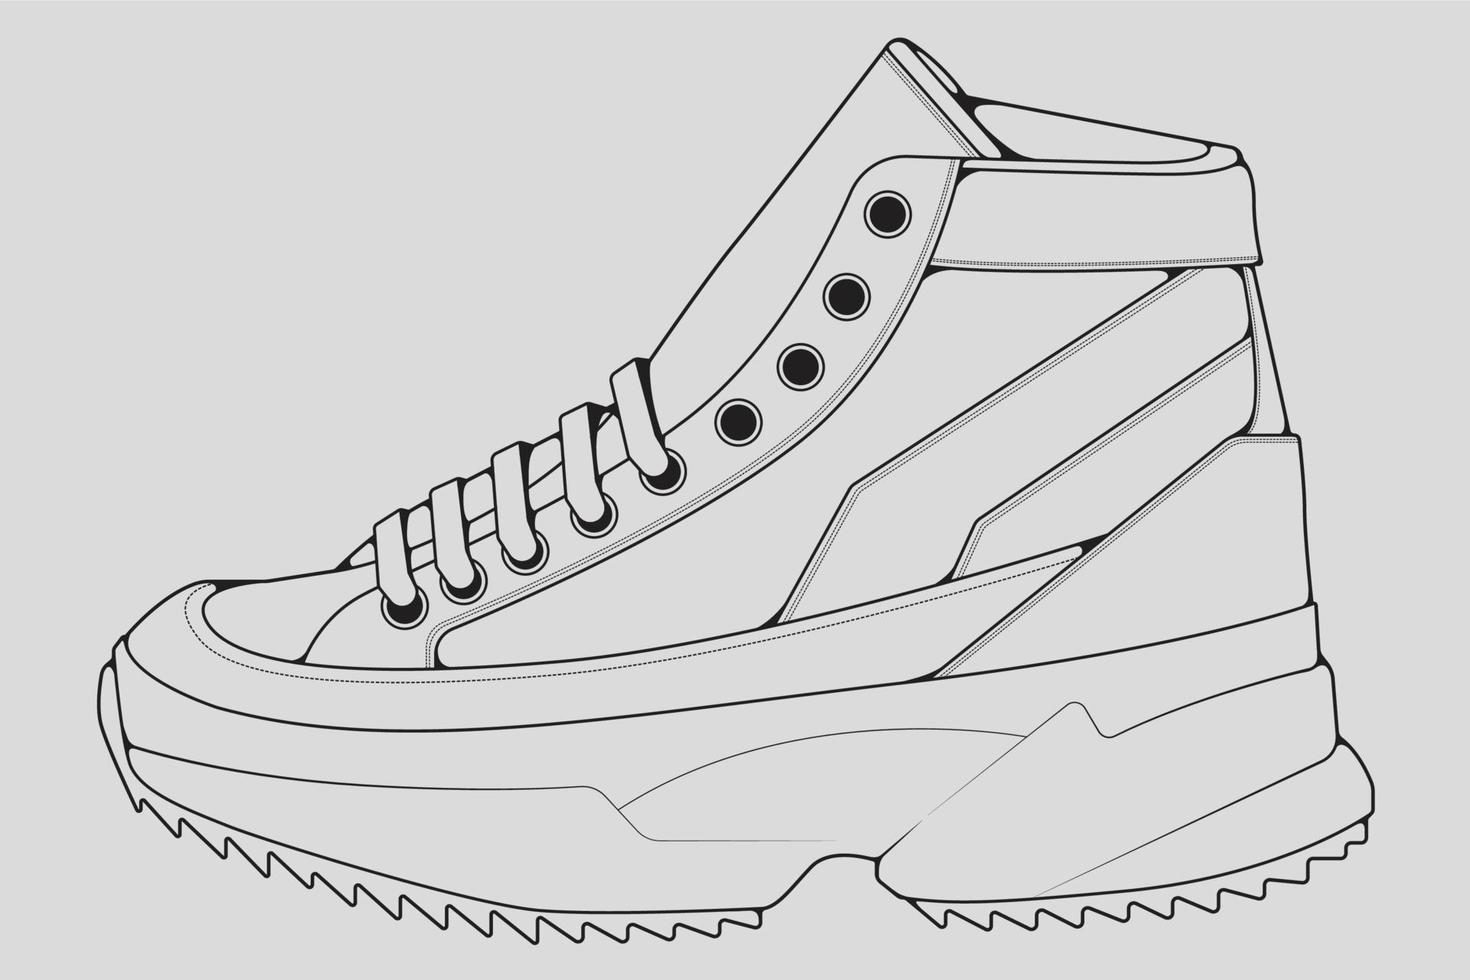 Schuhe Sneaker Umrisszeichnung Vektor, Turnschuhe in einem Skizzenstil gezeichnet, schwarze Linie Sneaker Turnschuhe Vorlagenumriss, Vektorillustration. vektor